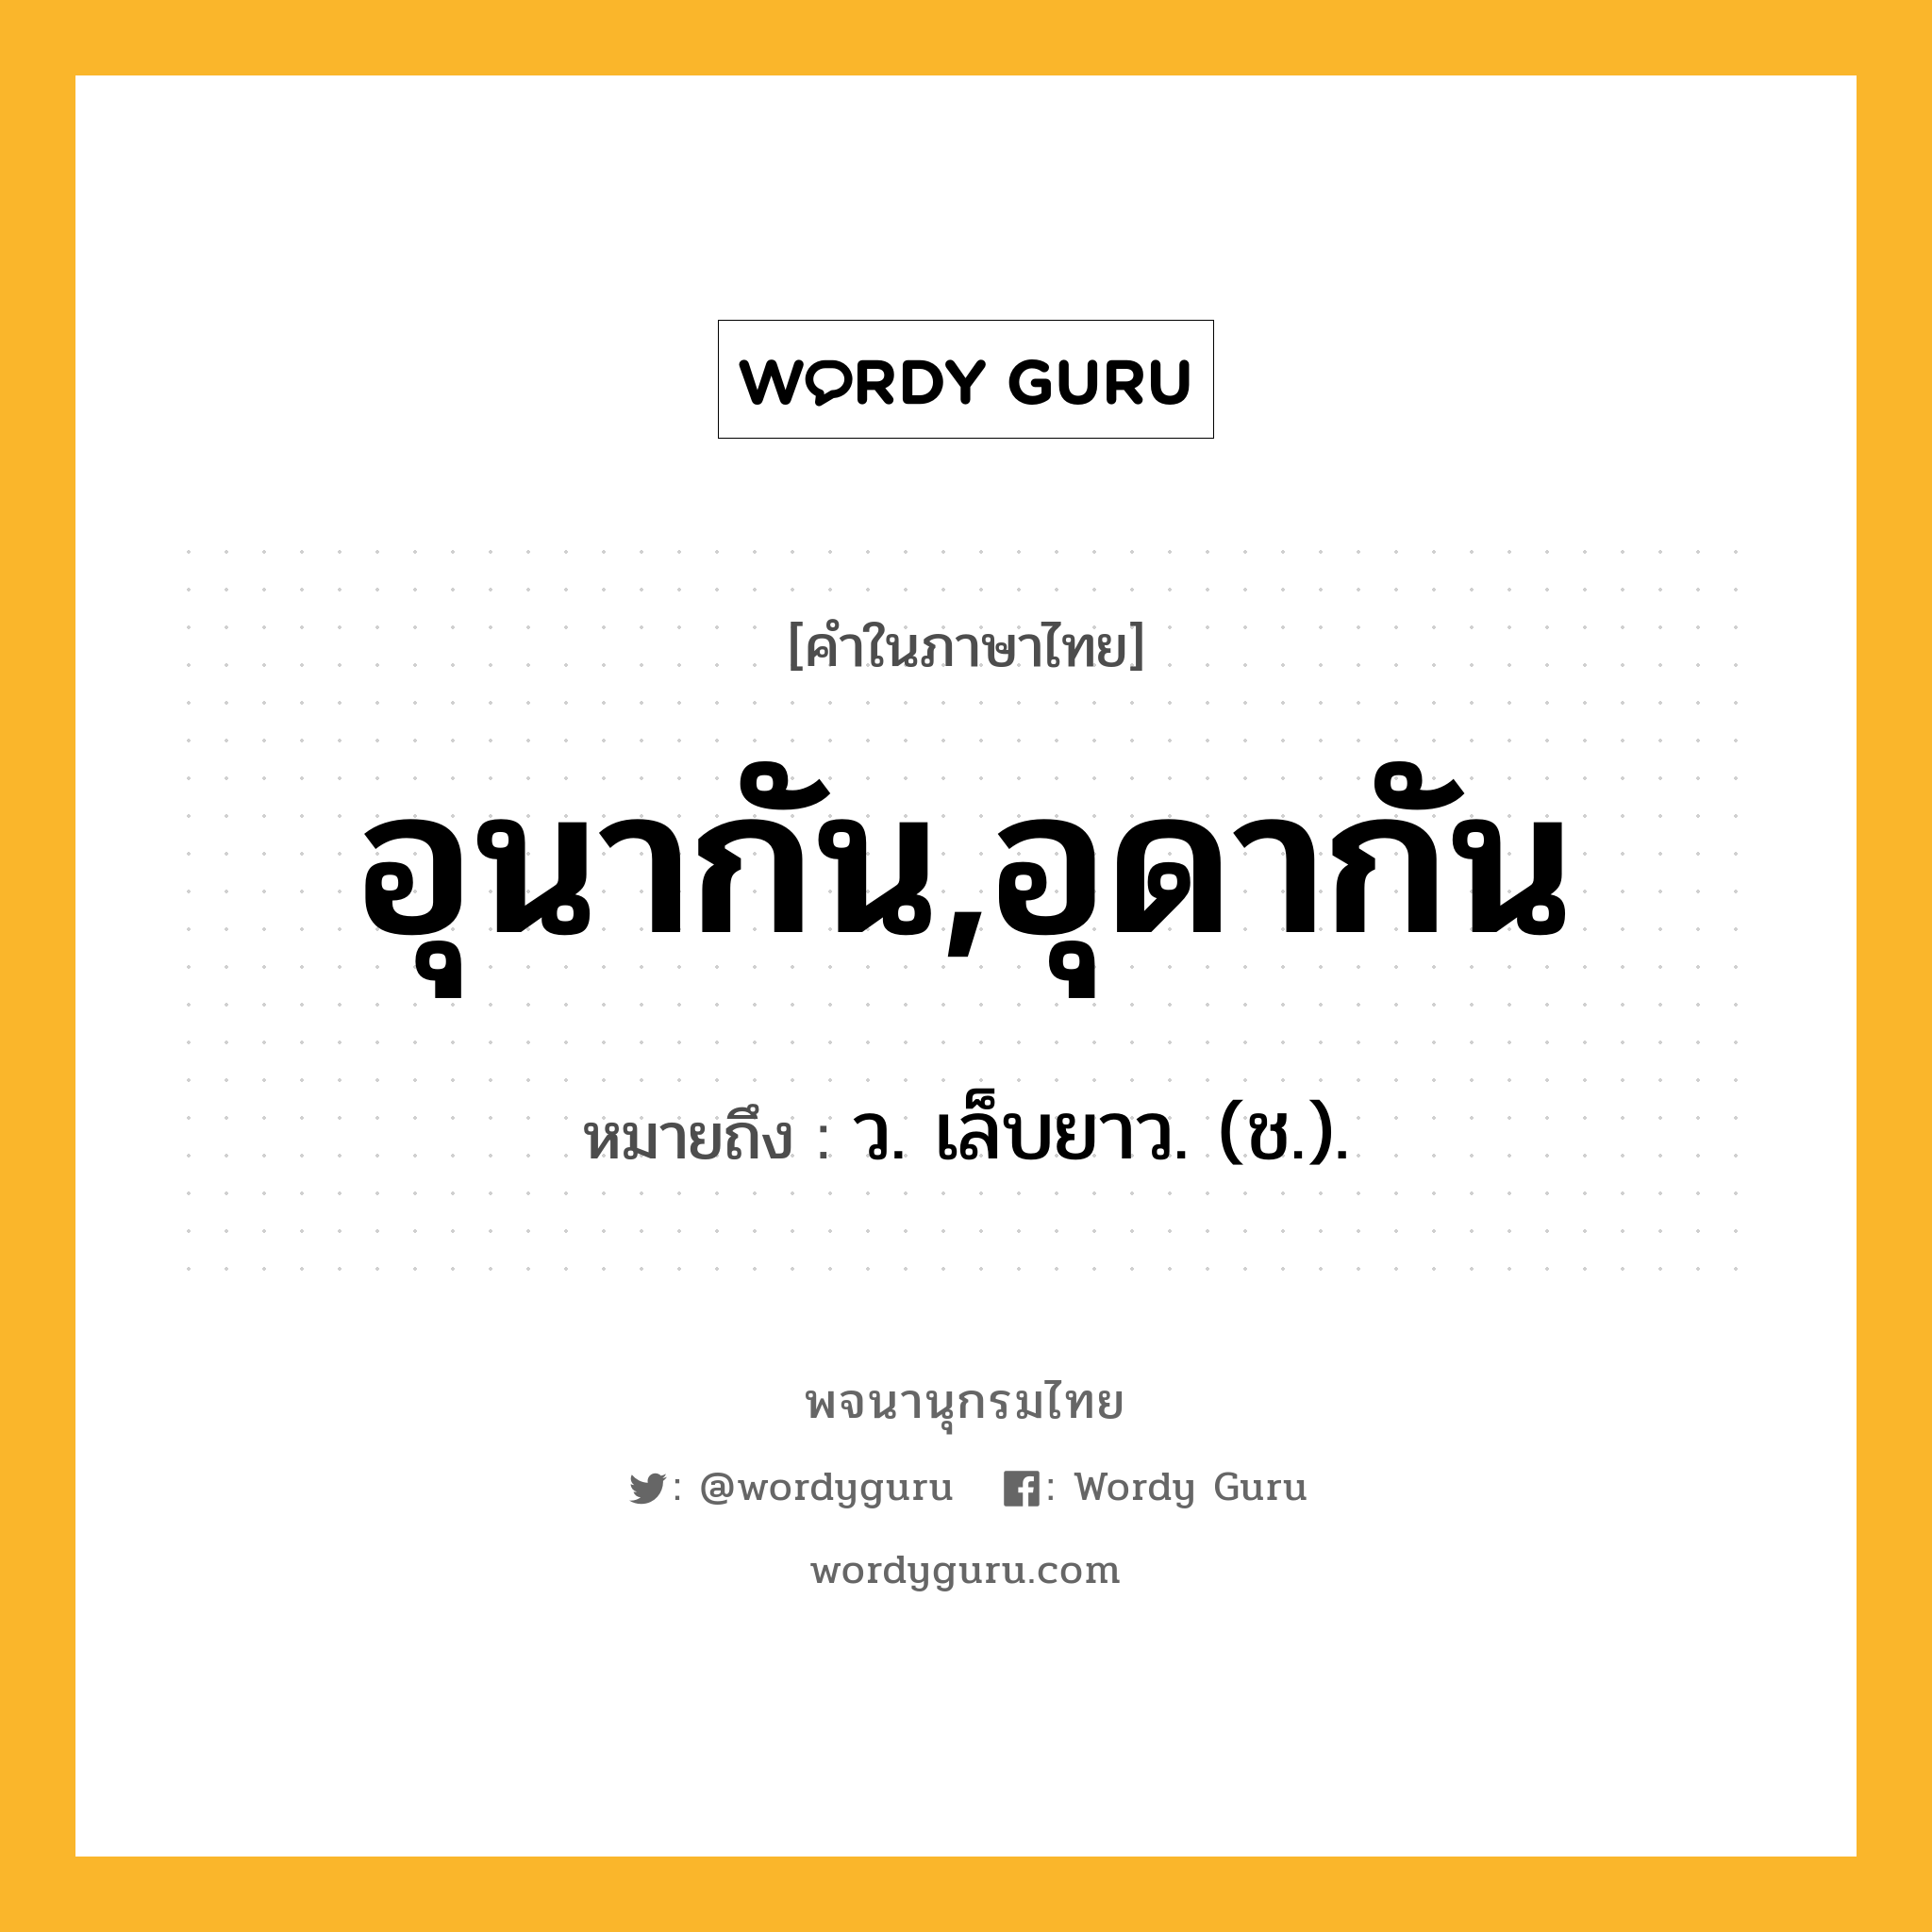 อุนากัน,อุดากัน ความหมาย หมายถึงอะไร?, คำในภาษาไทย อุนากัน,อุดากัน หมายถึง ว. เล็บยาว. (ช.).